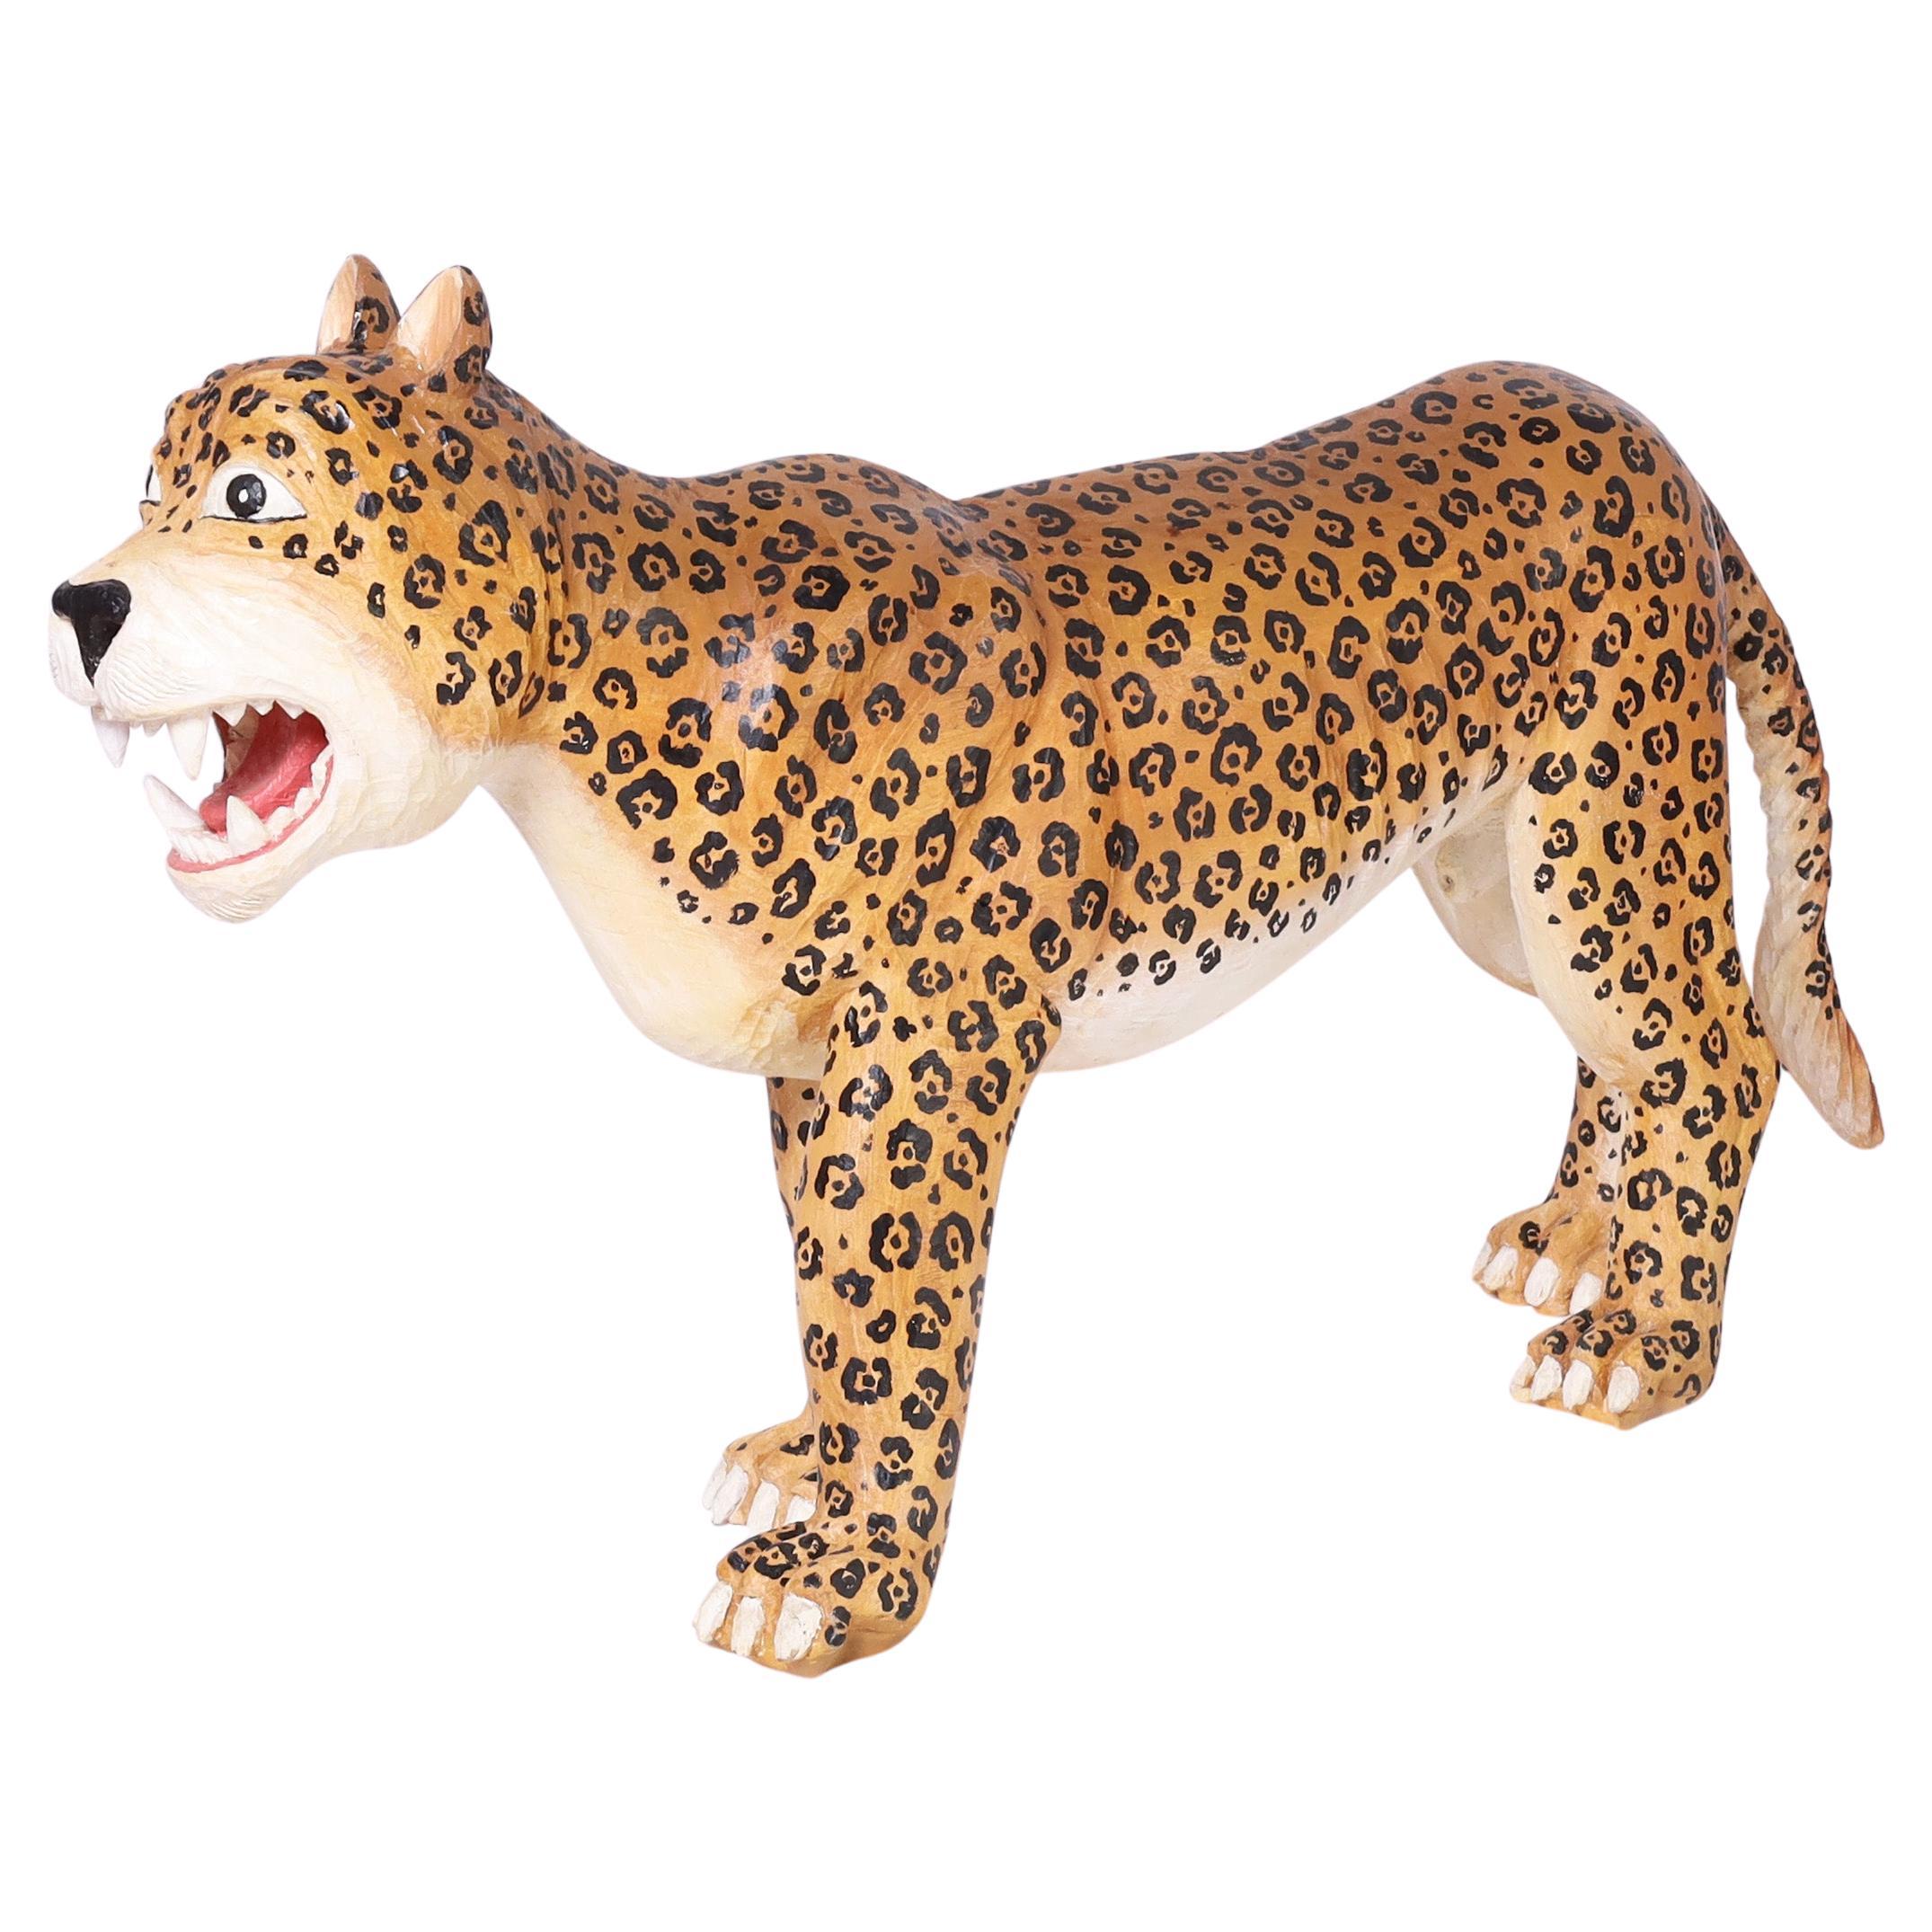 Jaguar fantaisiste vintage grandeur nature sculpté à la main, décoré de ses rosettes distinctives dans une expression faussement féroce.